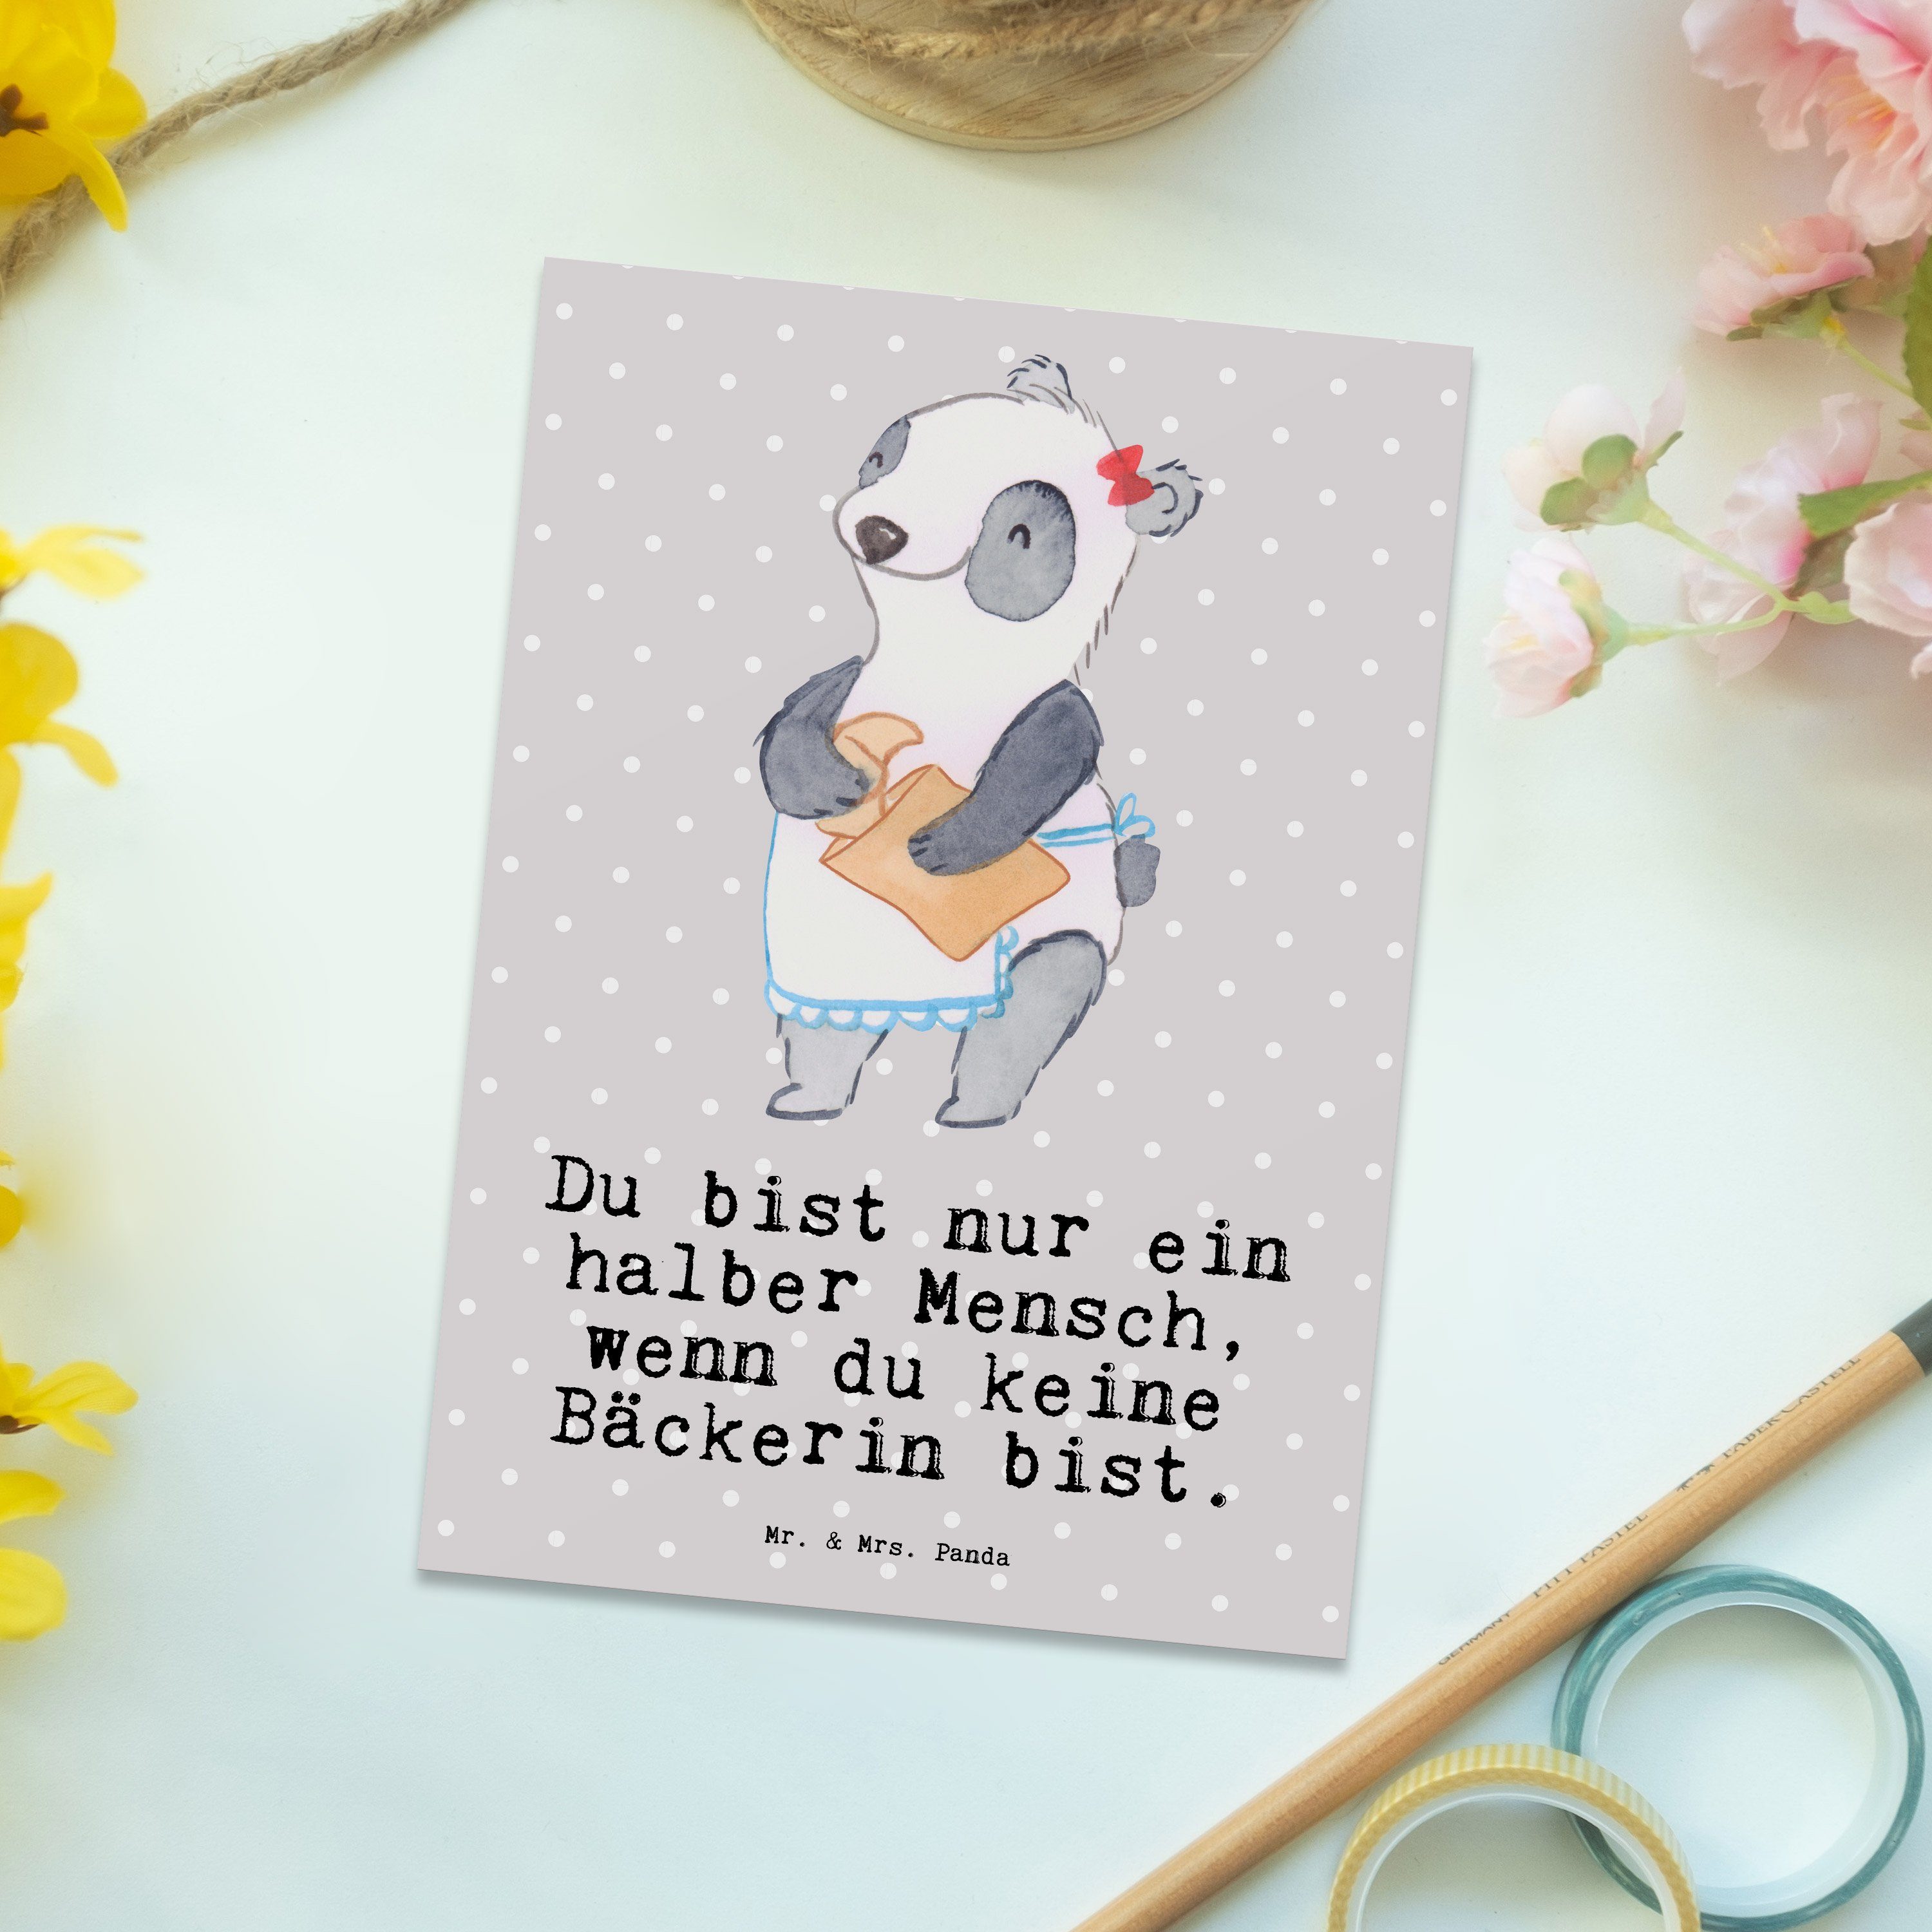 & Grau mit Pastell - Bäckerin Einladung, Mr. Panda Mrs. - Backstube, Da Geschenk, Postkarte Herz